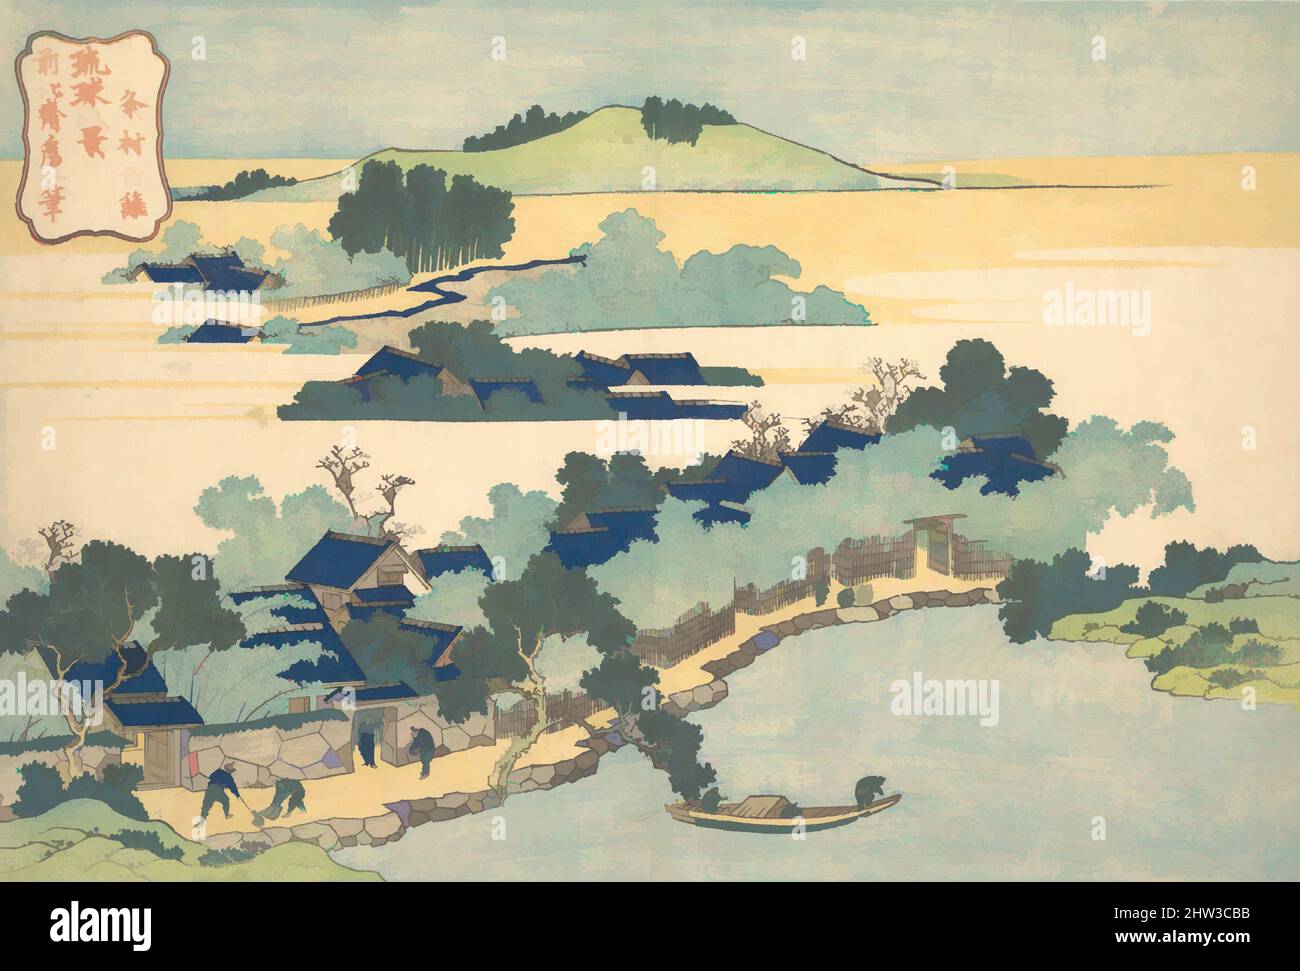 Arte ispirata da 琉球八景 粂村竹籬, Bamboo Hedge a Kumemura (Kumemura chikuri), dalla serie otto viste delle isole Ryūkyū (Ryūkyū hakkei), periodo Edo (1615–1868), ca. 1832, Giappone, stampa a blocchi di legno policromi; inchiostro e colore su carta, 9 7/8 x 14 5/8 pollici (25,1 x 37,1 cm), stampe, opere classiche modernizzate da Artotop con un tuffo di modernità. Forme, colore e valore, impatto visivo accattivante sulle emozioni artistiche attraverso la libertà delle opere d'arte in modo contemporaneo. Un messaggio senza tempo che persegue una nuova direzione selvaggiamente creativa. Artisti che si rivolgono al supporto digitale e creano l'NFT Artotop Foto Stock